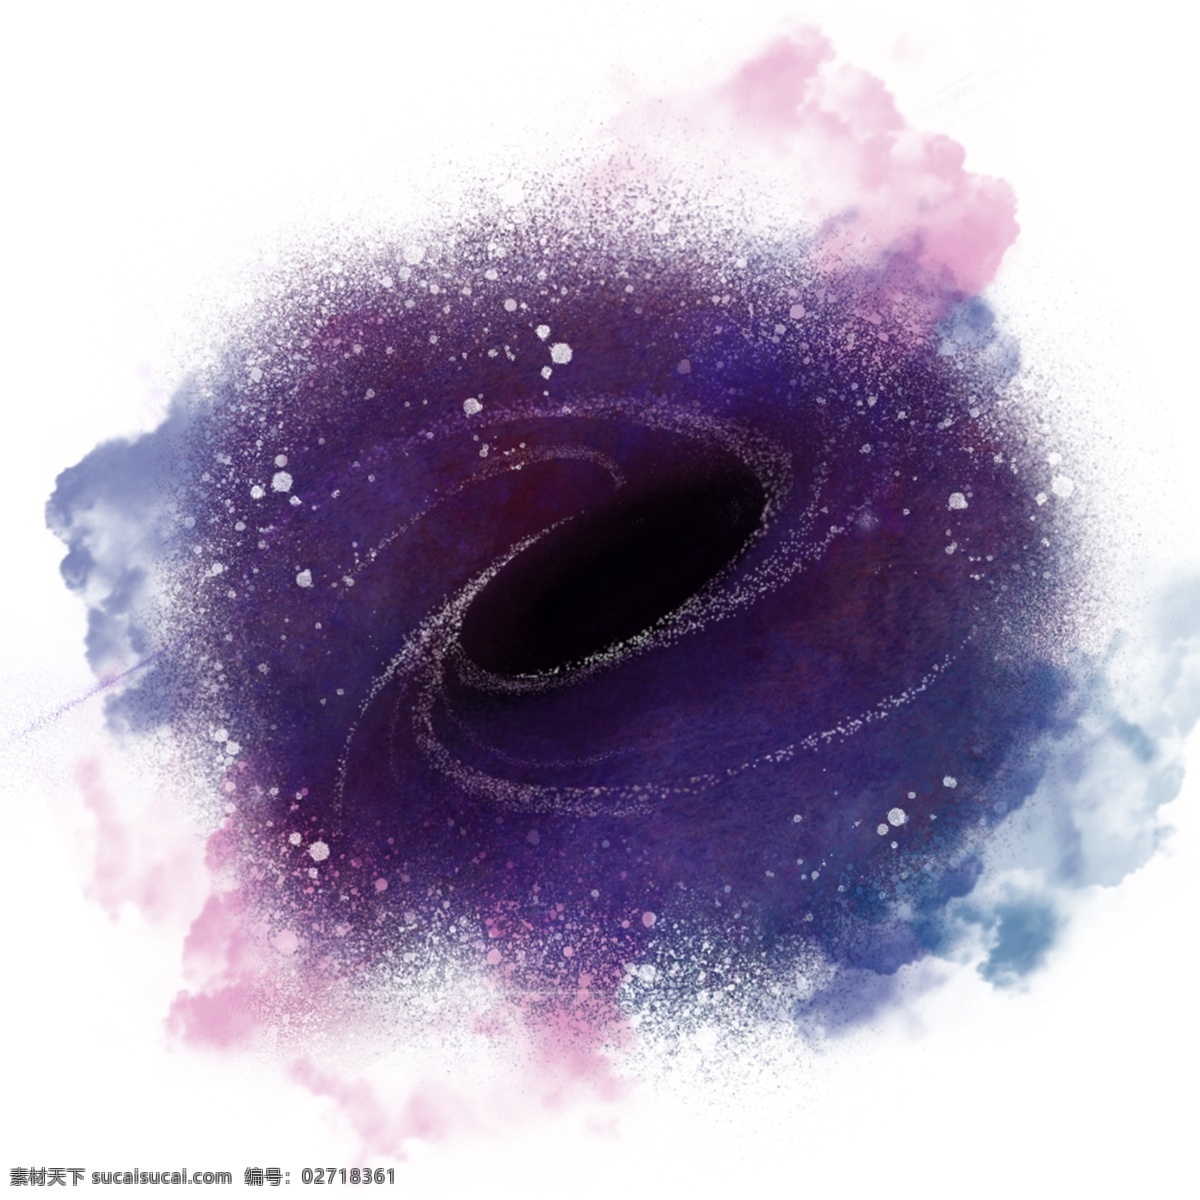 原创 黑洞 写实 风格 元素 星云 星空 喷溅 炫彩